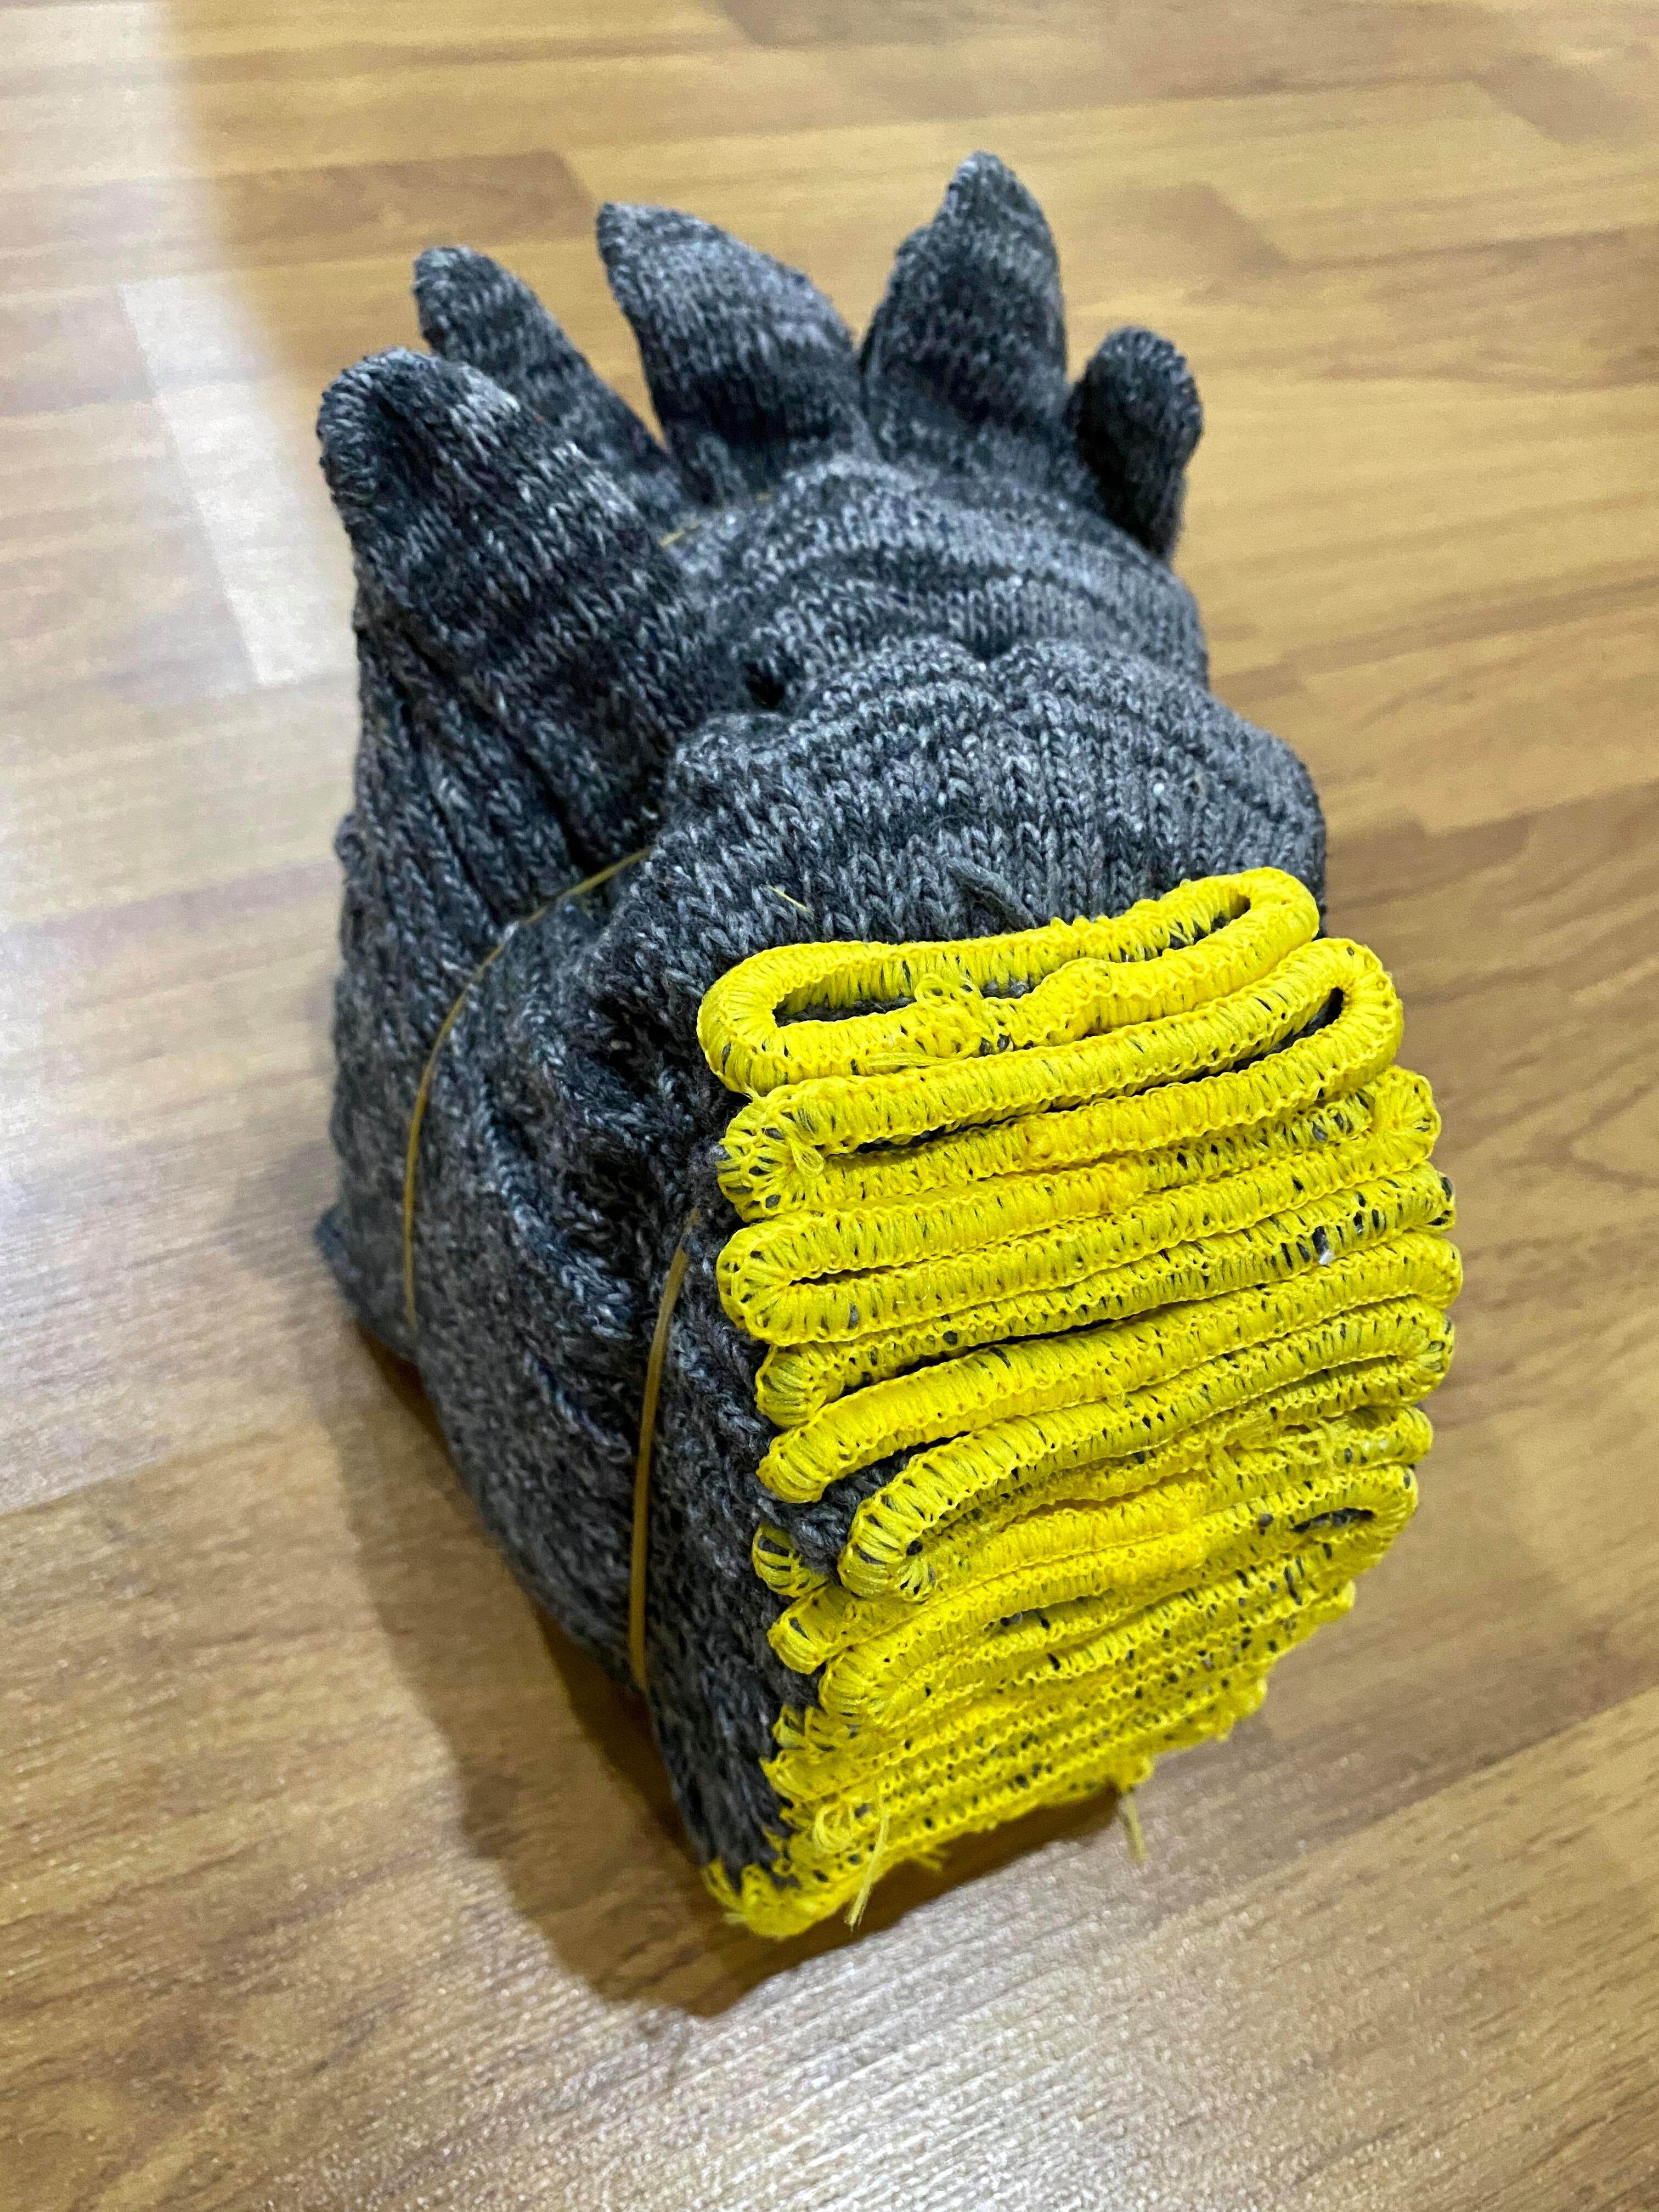 ถุงมือผ้า ถุงมือ ขนาด 7ขีด สีเทาขอบเหลือง 12คู่/โหล ถุงมืออย่างดี ถุงมือแบบหนา